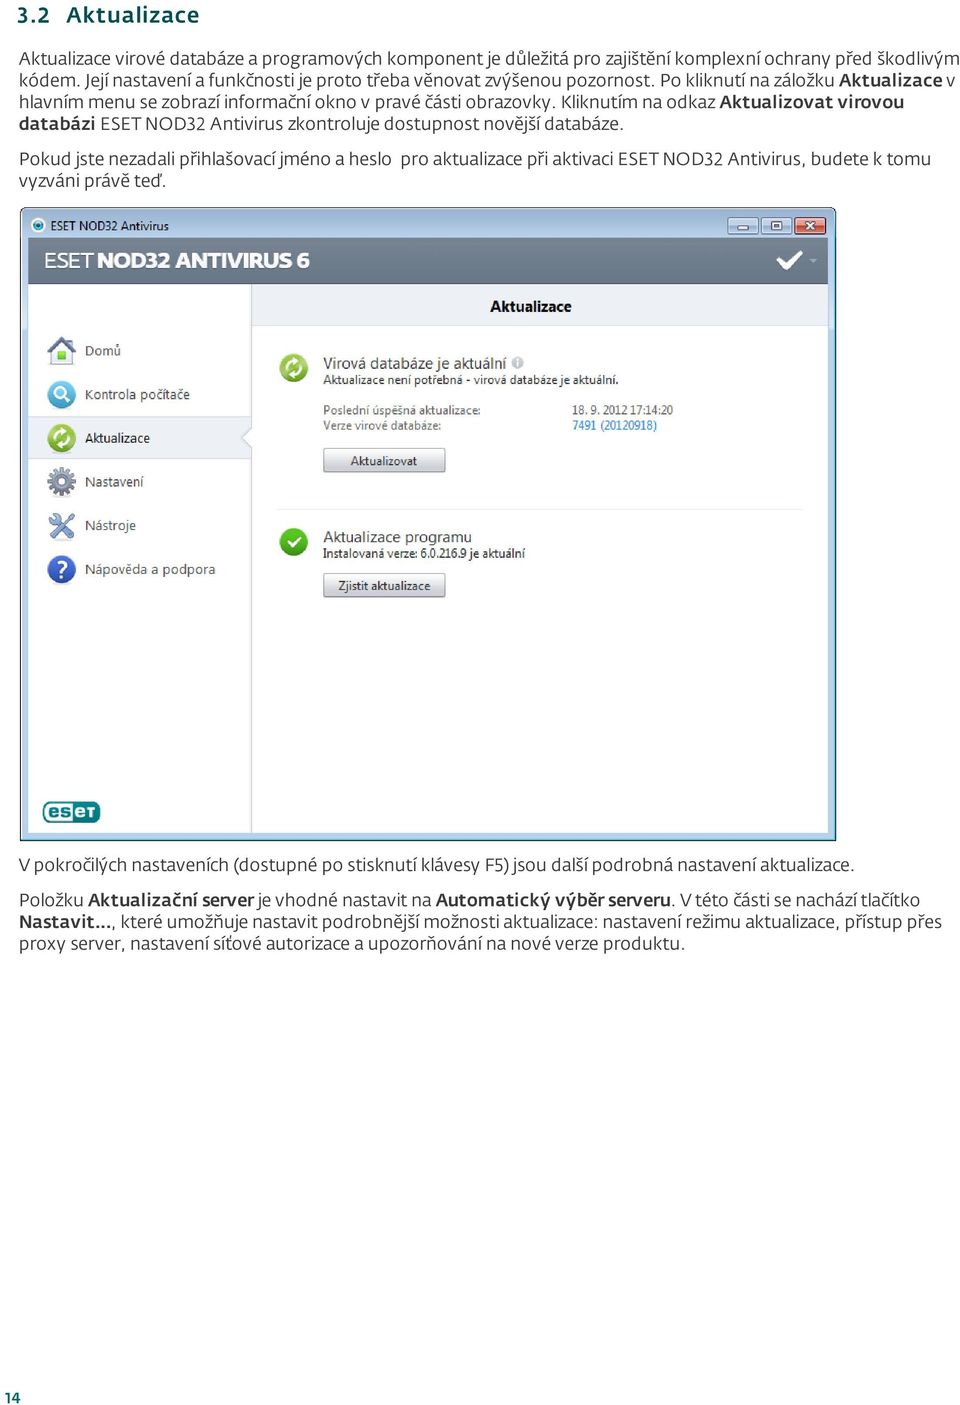 Kliknutím na odkaz Aktualizovat virovou databázi ESET NOD32 Antivirus zkontroluje dostupnost novější databáze.